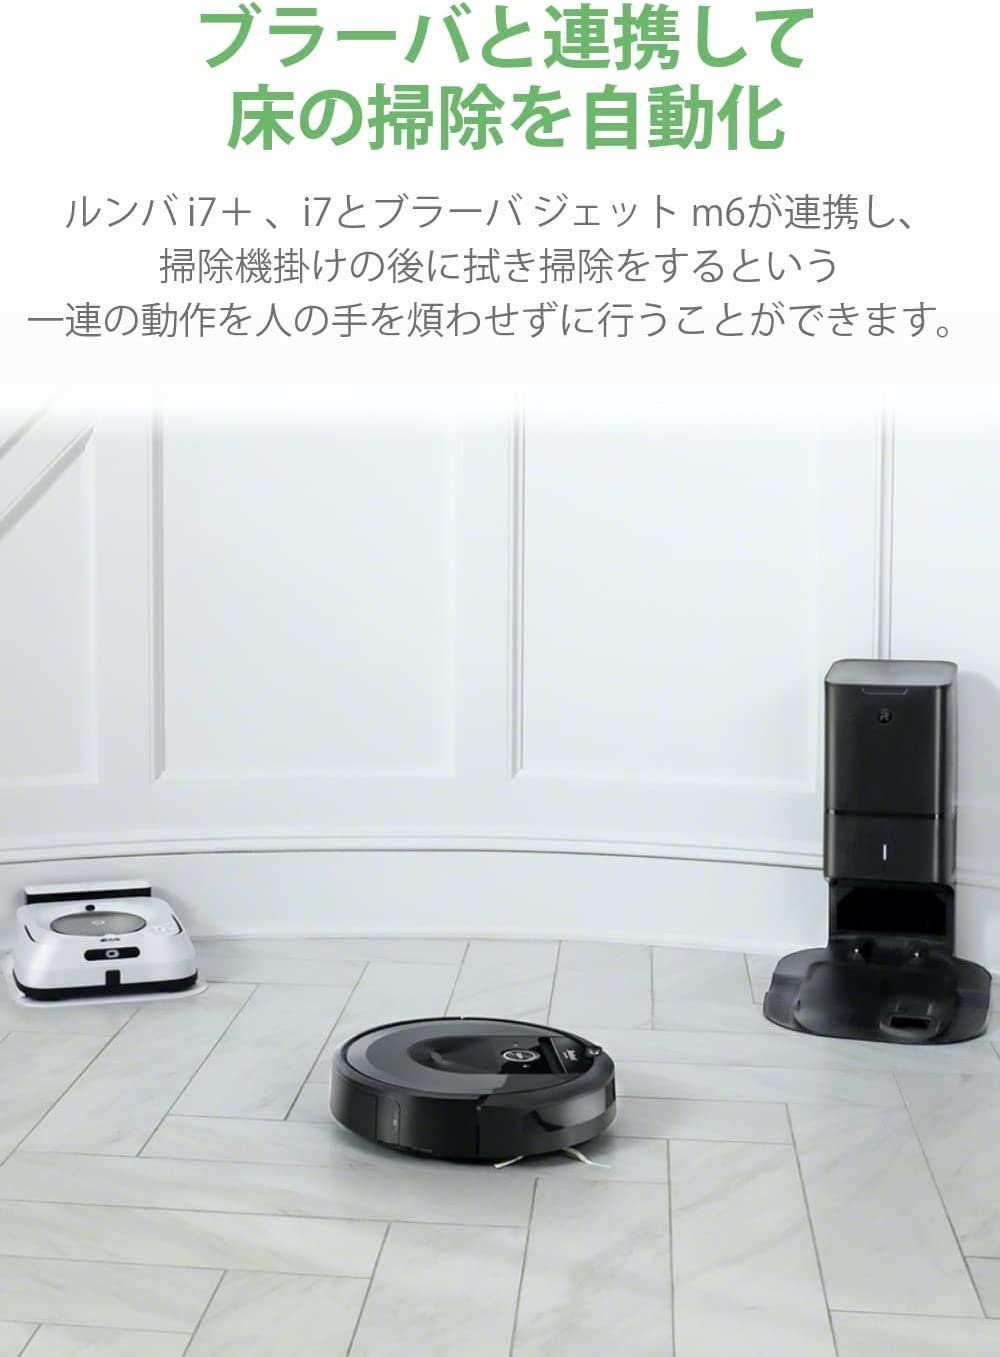 ルンバ i7 掃除機 アイロボット 水洗いできる ダストボックス wifi対応 